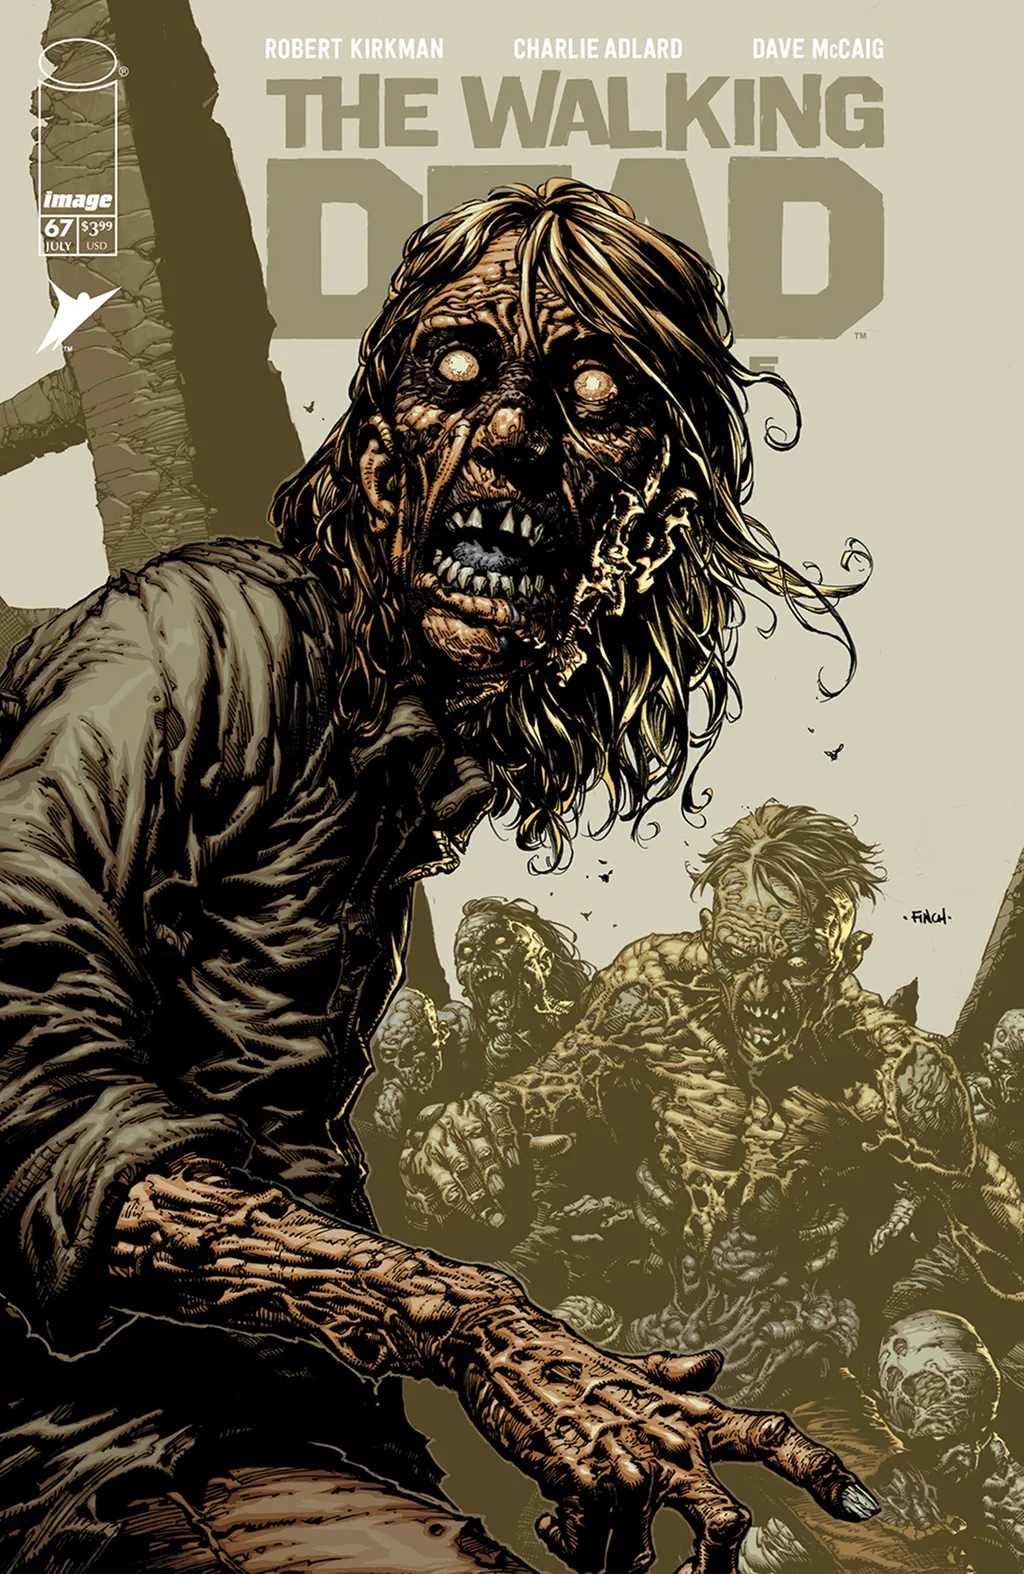 The Walking Dead Deluxe vem trazendo páginas coloridas, nova impressão, formato de luxo e vários extras (Imagem: Reprodução/Image Comics)